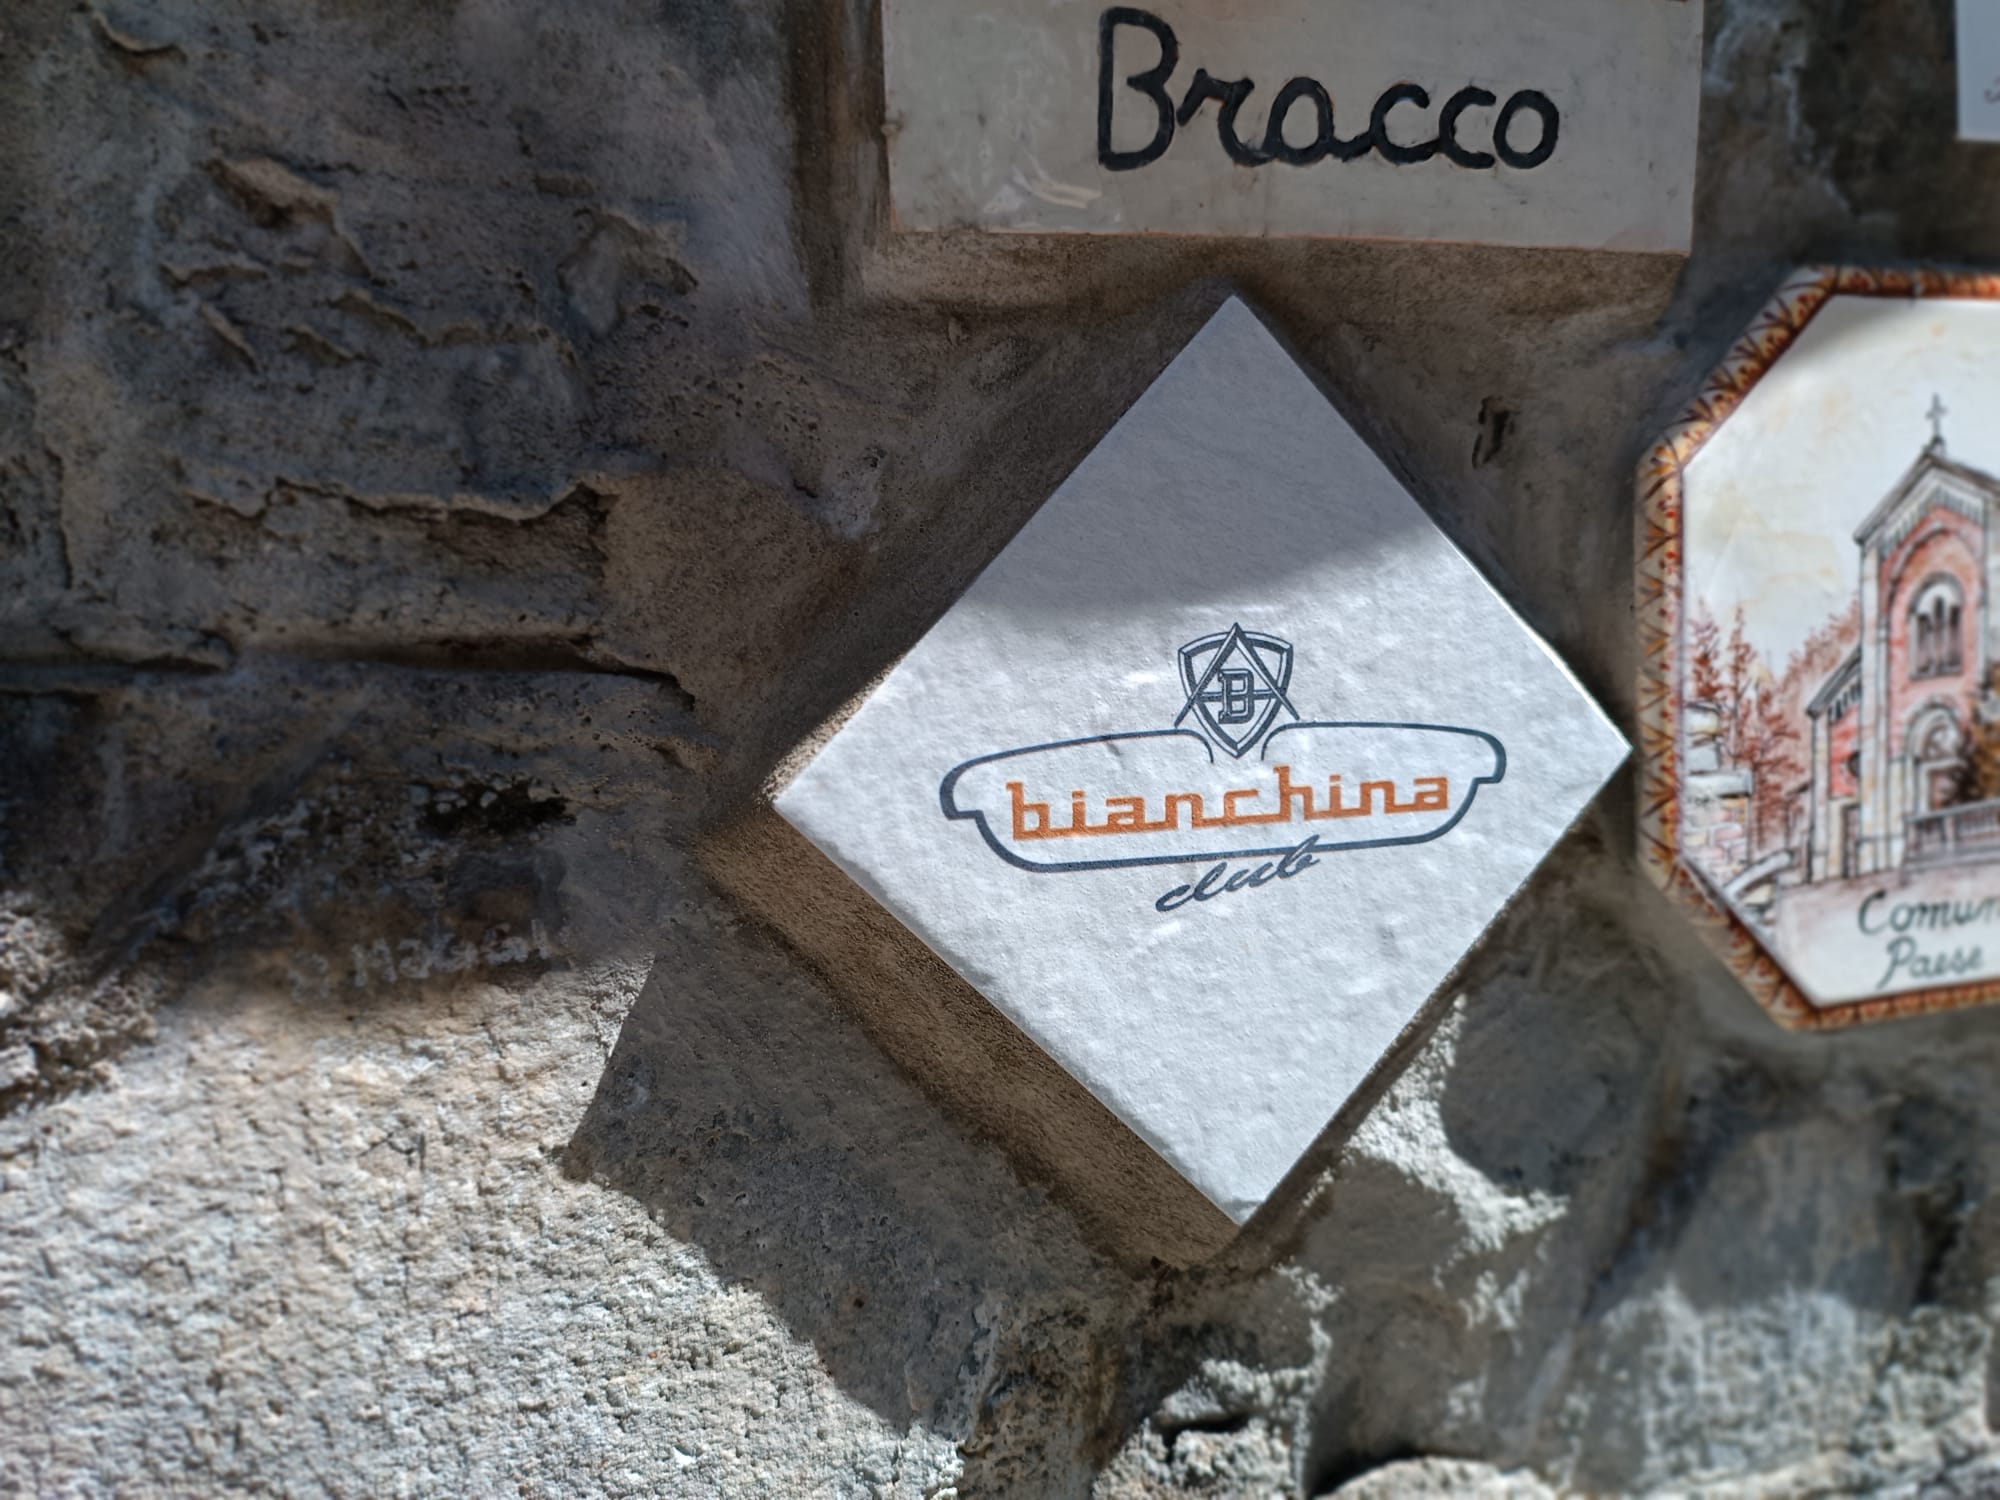 Una nuova piastrella per il Muretto di Alassio, dedicata al Bianchina Club